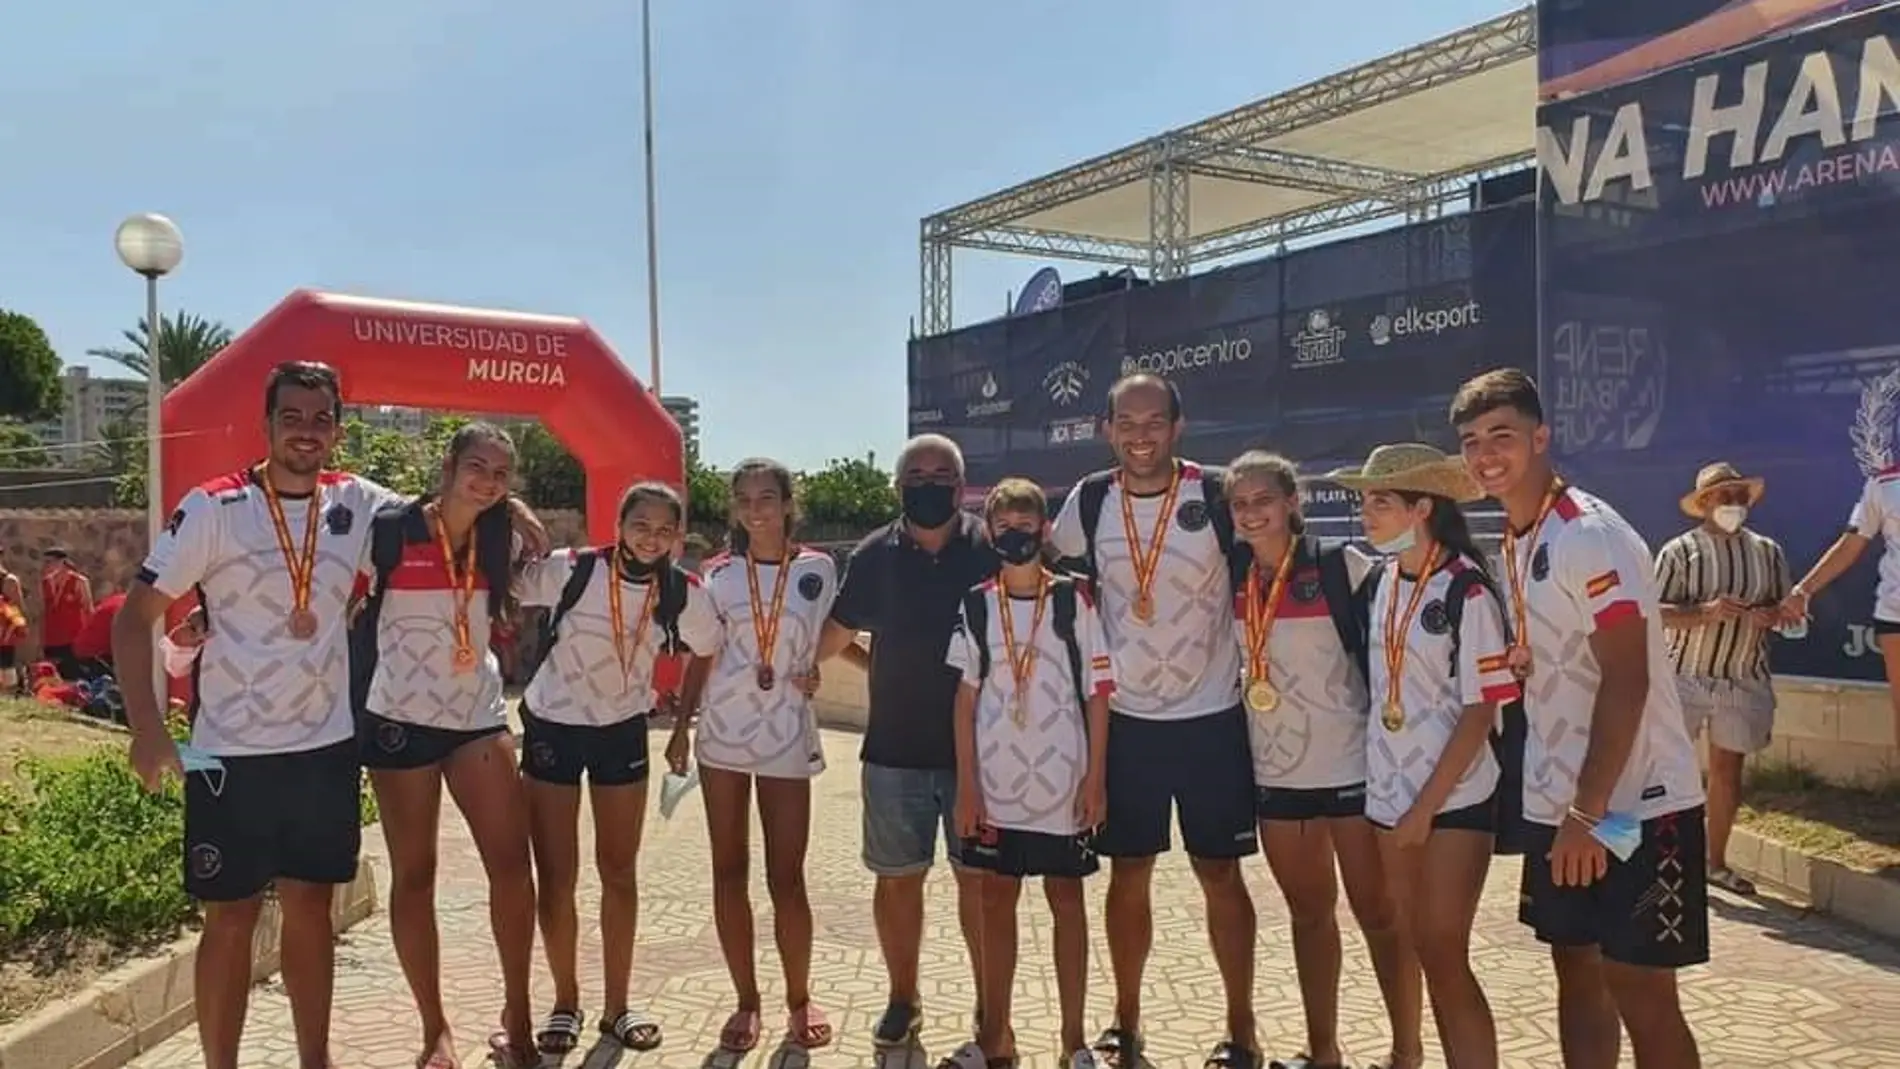 Jóvenes deportistas manchegos, cosechan grandes logros en el Campeonato de España de Balonmano Playa